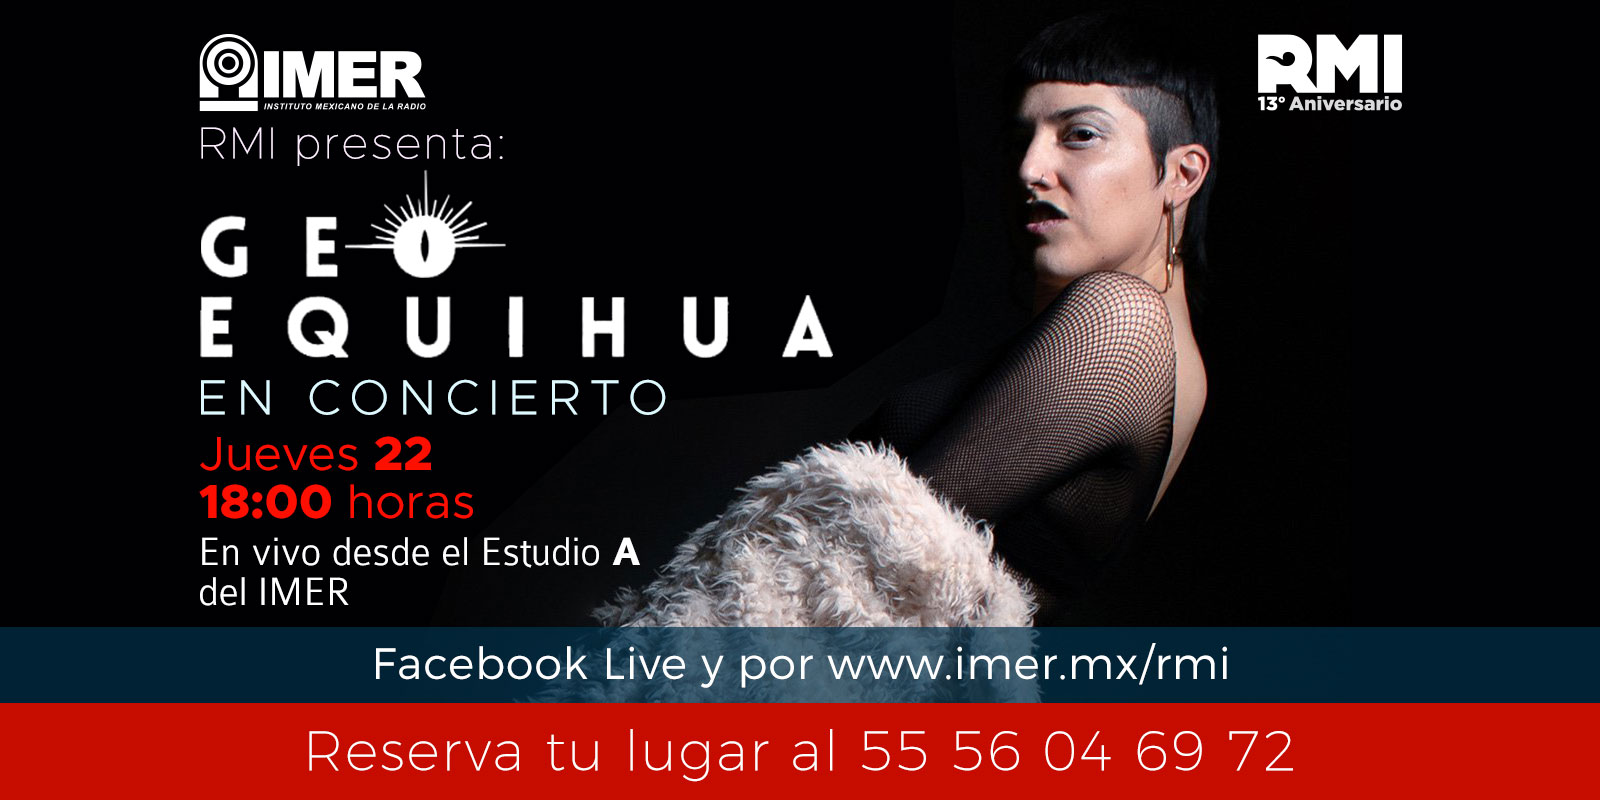 Radio México Internacional presenta: Geo Equihua en concierto. Jueves 22 de febrero, 18:00 hrs. En vivo desde el Estudio A del IMER, sigue la transmisión a través de RMI www.imer.mx/rmi y en Facebook live. Reserva tu lugar al 55 5604 6972